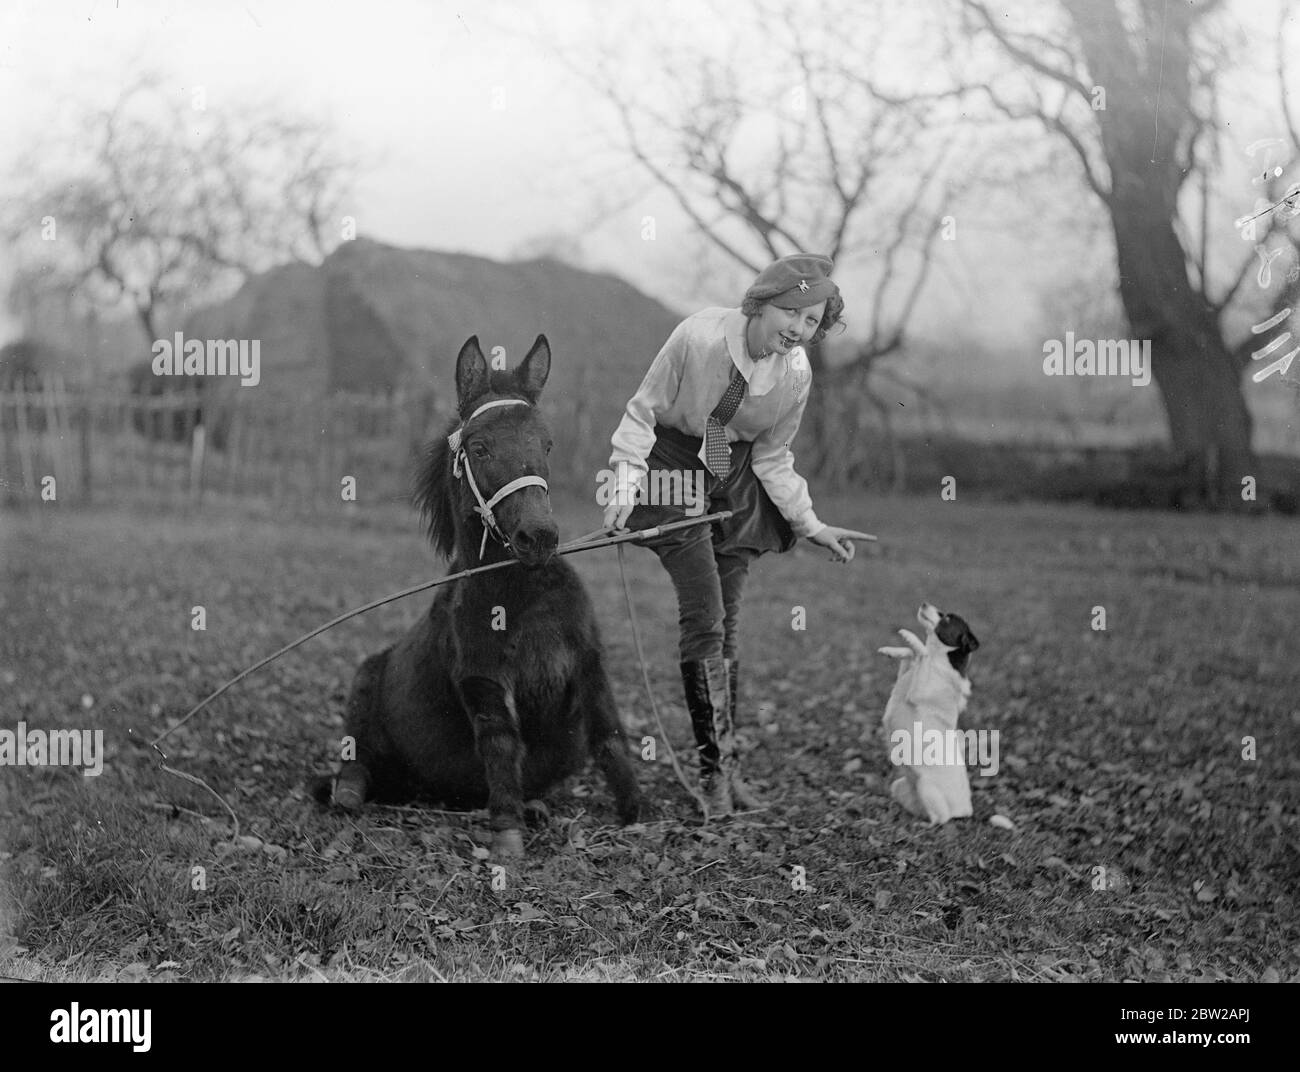 16-jährige Mädchen Tiertrainer, bereitet neue Acts für Weihnachten. Die 16-jährige Olga Astley, eine der jüngsten Tiertrainerinnen Großbritanniens, ist in ihrem Ongar (Essex)-Viertel beschäftigt, um ihren Shetland-Ponys beizubringen und Hunden ihre neuen Acts für die Weihnachtsvorstellung und den Zirkus aufzuführen. Viele von Olga's Tiere erscheinen in Handlungen im ganzen Land. Foto zeigt, Olga Astley lehrt Paddy, das Pony, und testet einen neuen Trick bei Ongar. 14. November 1937 Stockfoto